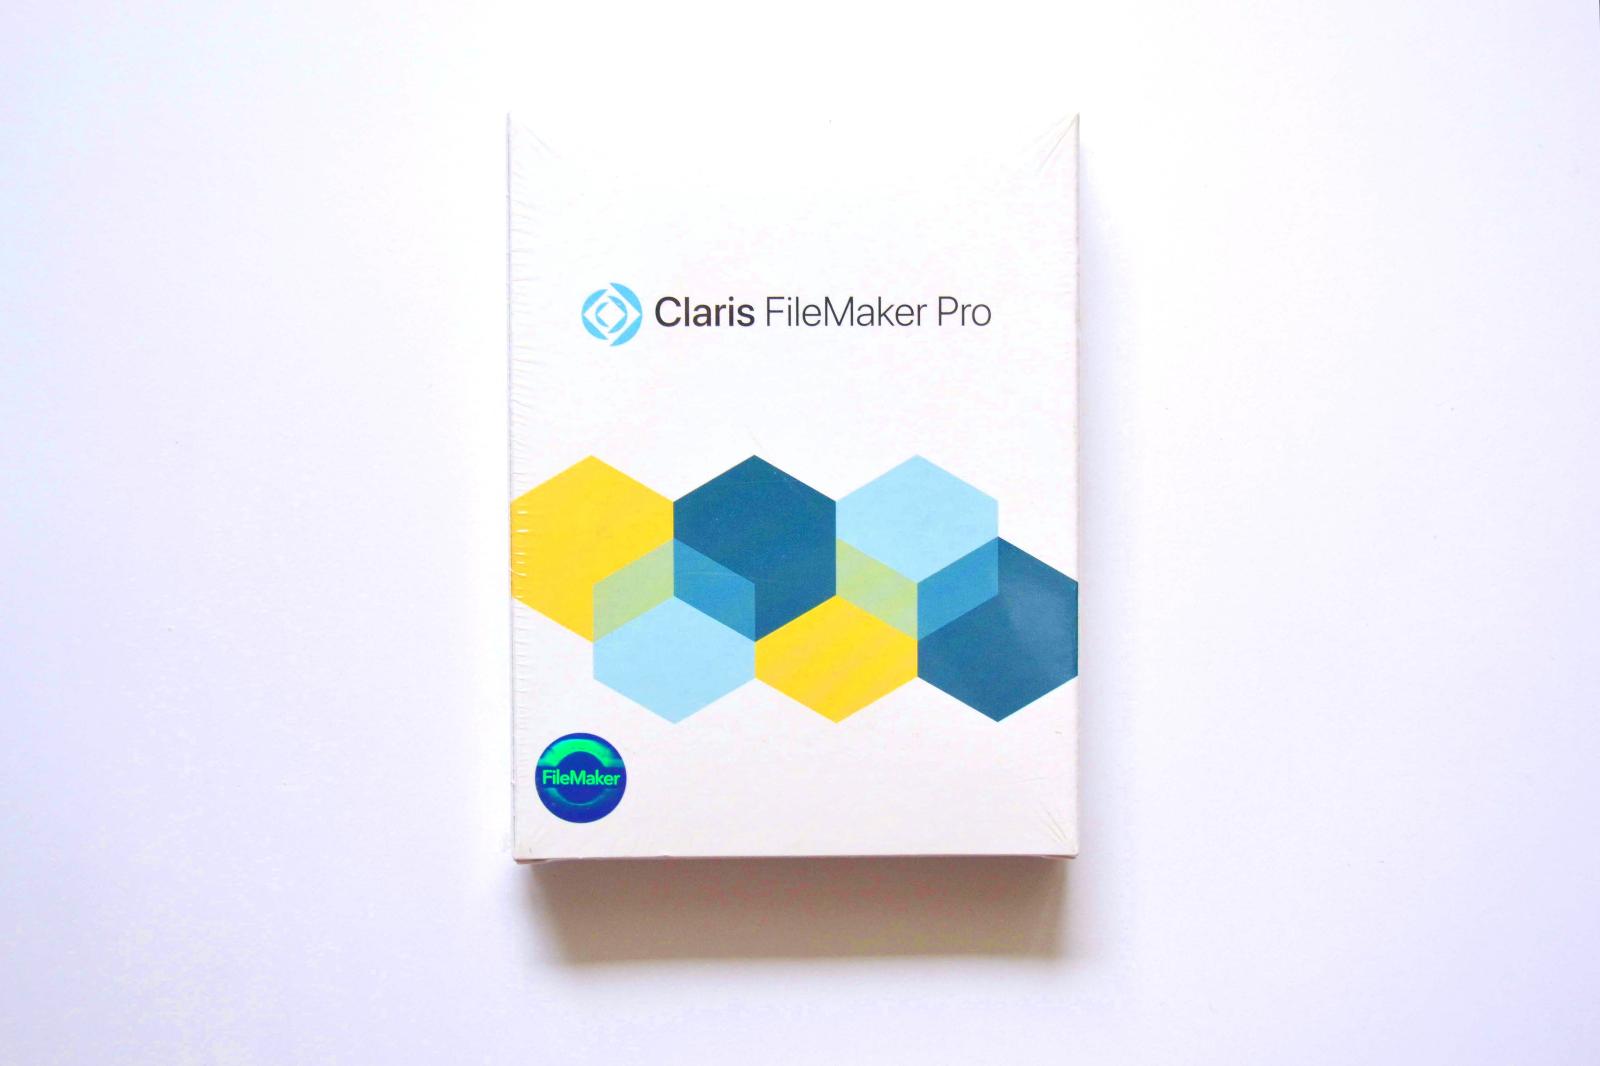 Claris FileMaker Pro 19 (programujte i bez znalostí) PC: 17 000 Kč - Počítače a hry